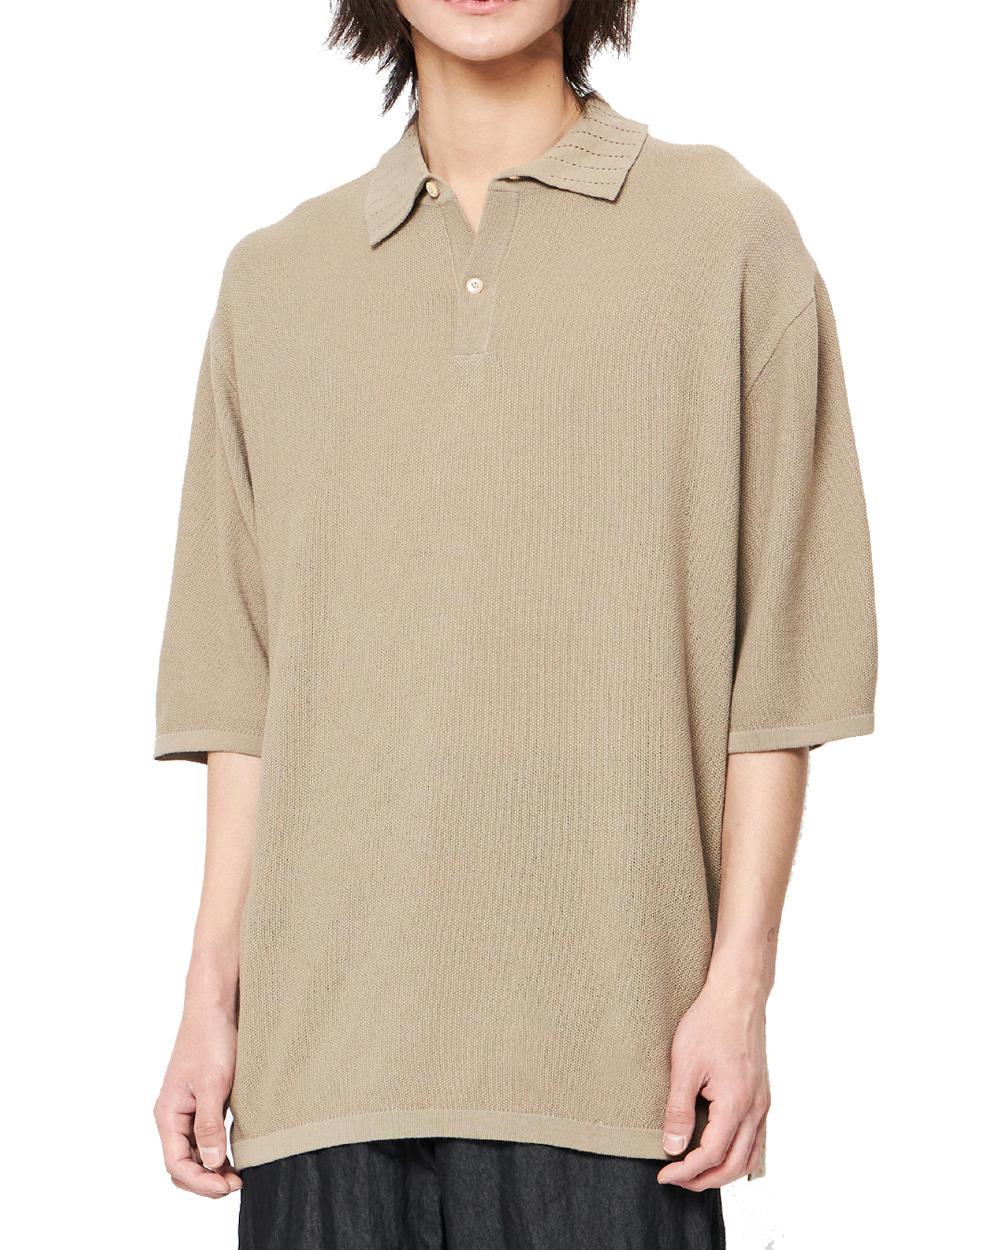 언어펙티드 Knitted polo shirt (Sand)